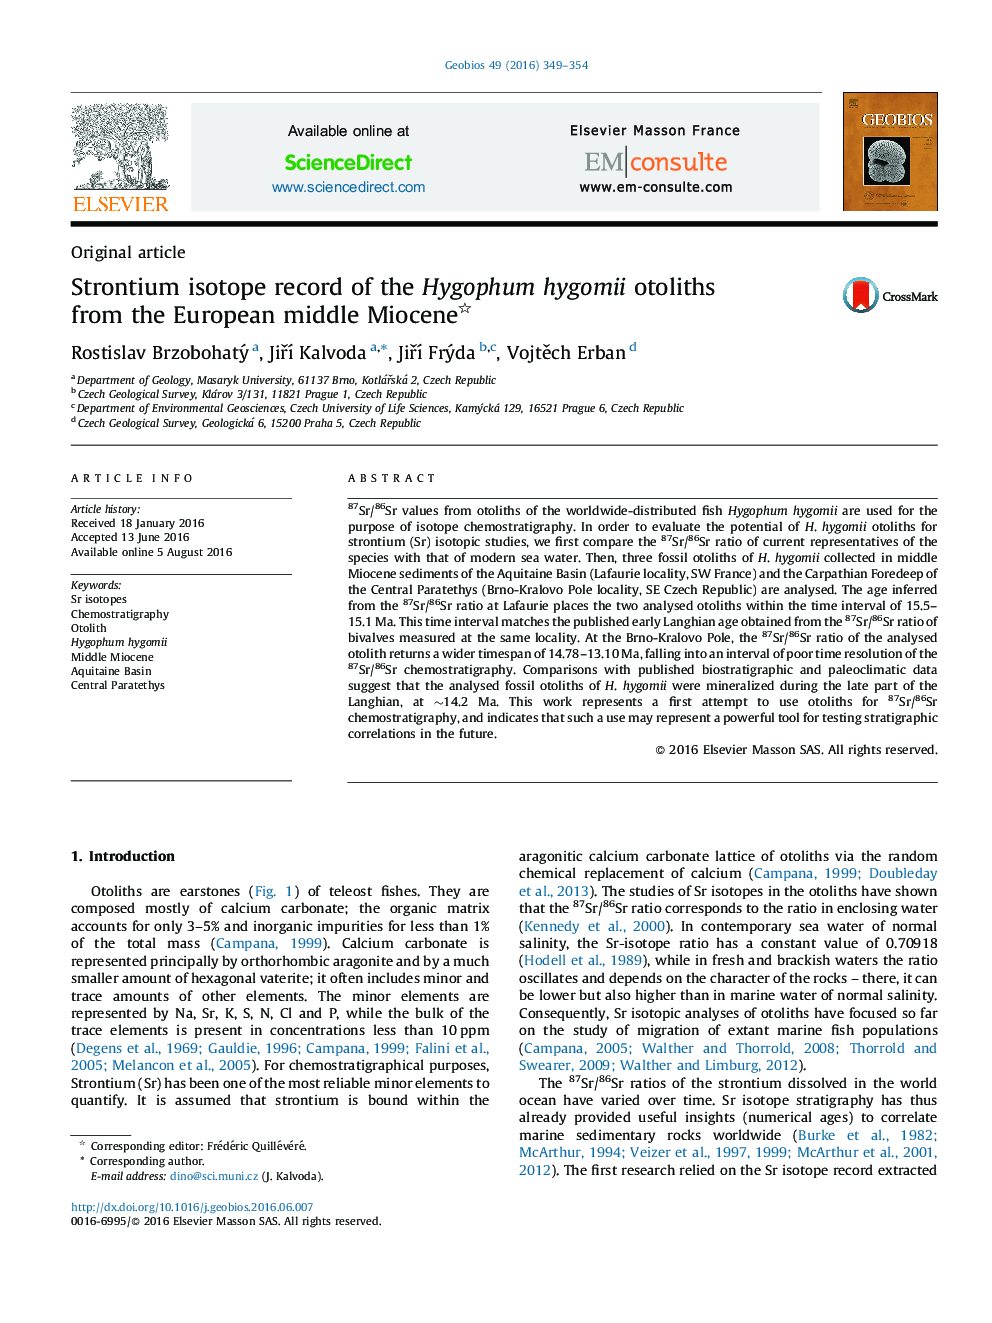 رکورد ایزوتوپ استرونتیوم از Otoliths Hygophum hygomii از میوسن میانه اروپا